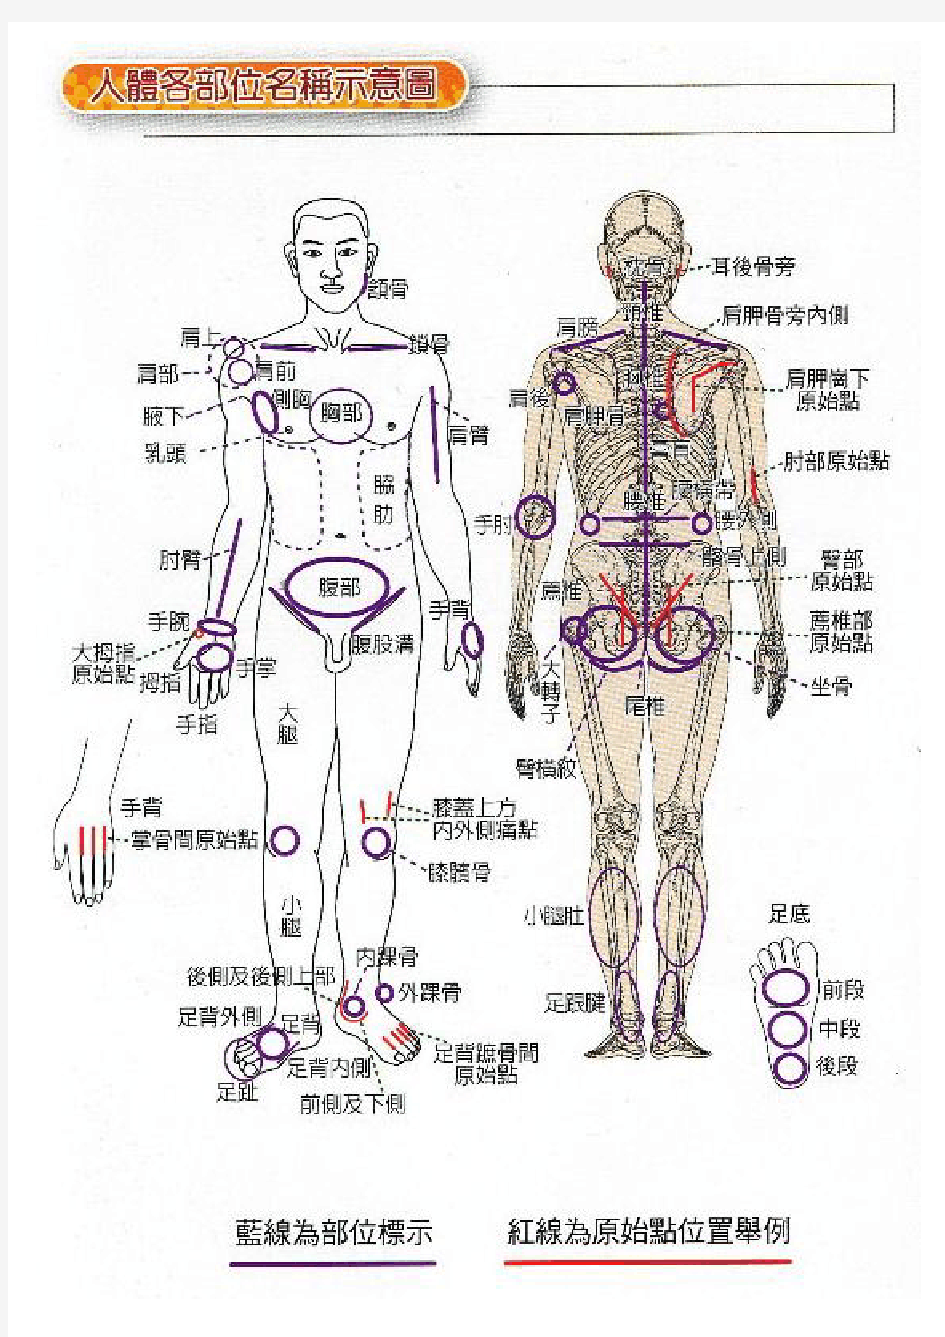 人体各部位名称及手法图